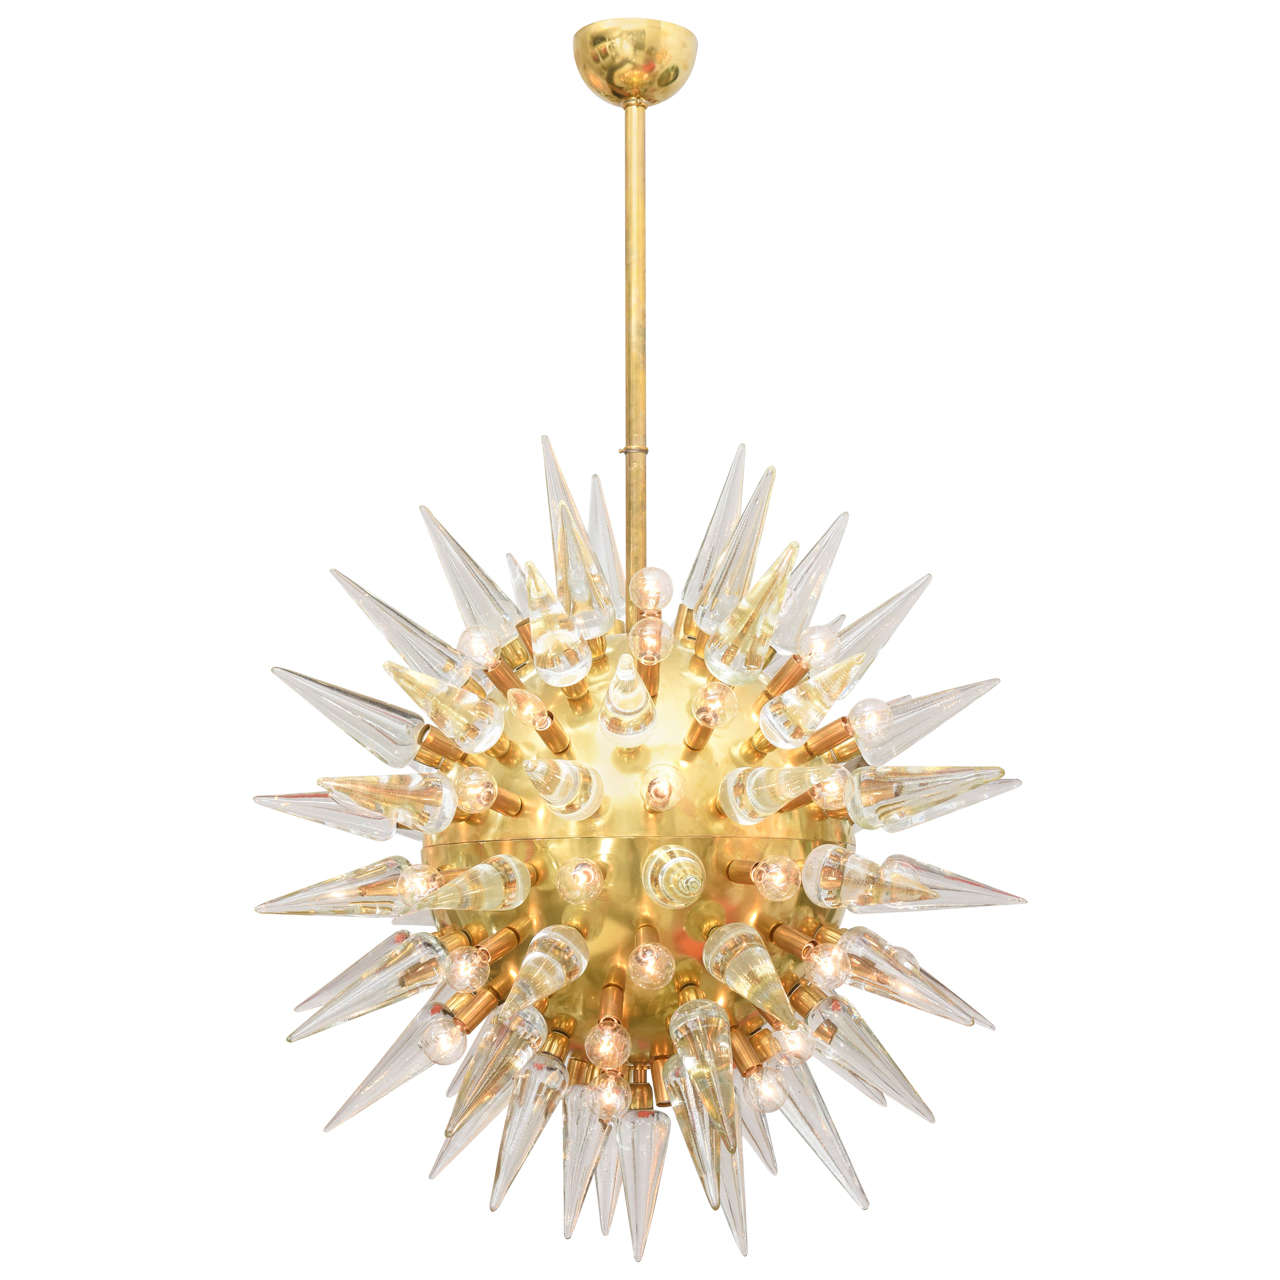 Monumental Italian Brass and Glass Spike Chandelier, Sputnik